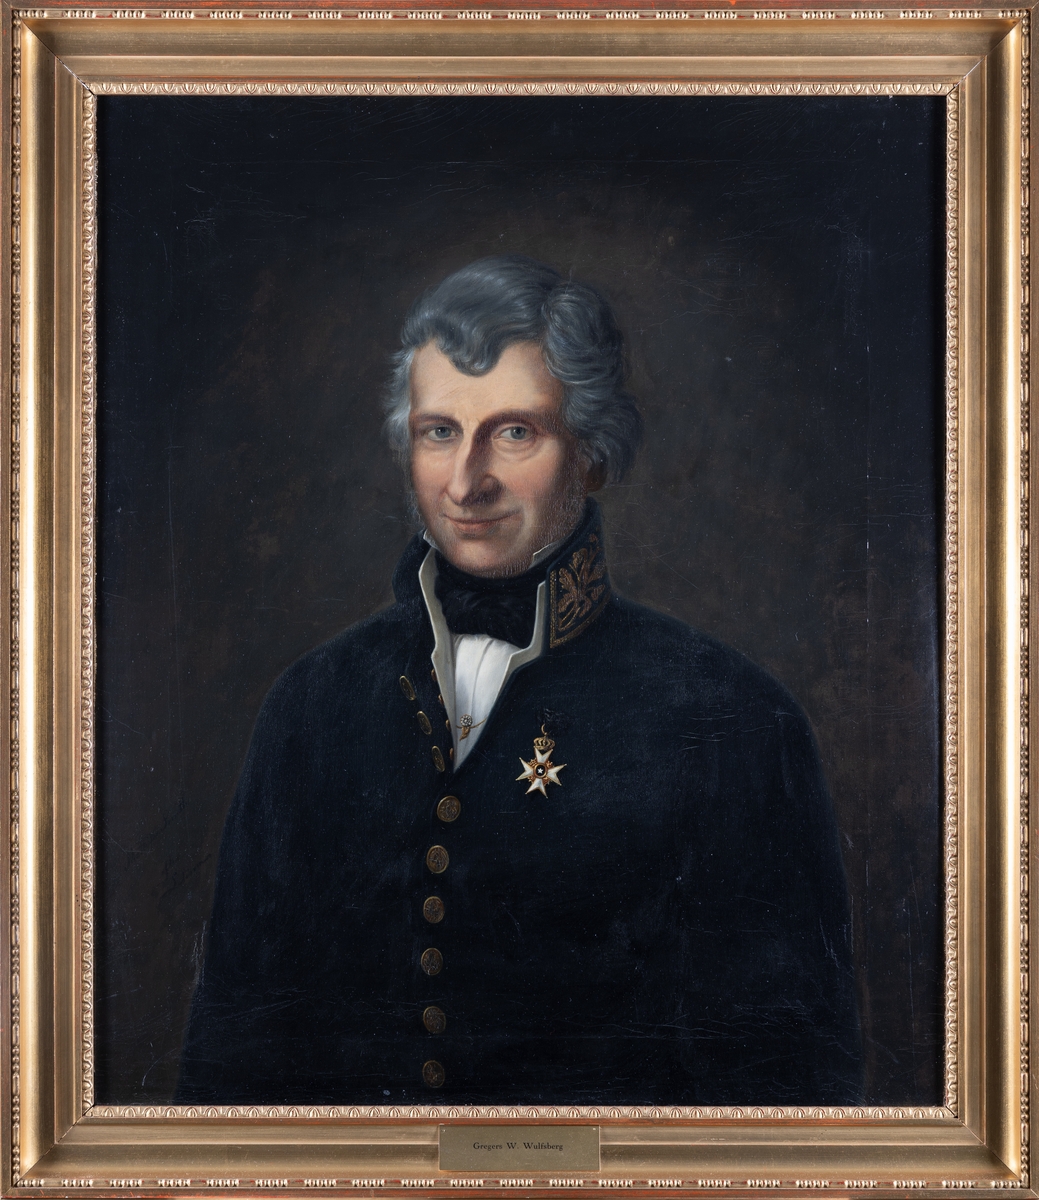 Portrett av Wulfsberg. Grått hår, mørk uniform. Amtmannsuniform etter 1815. Orden festet på brystet.